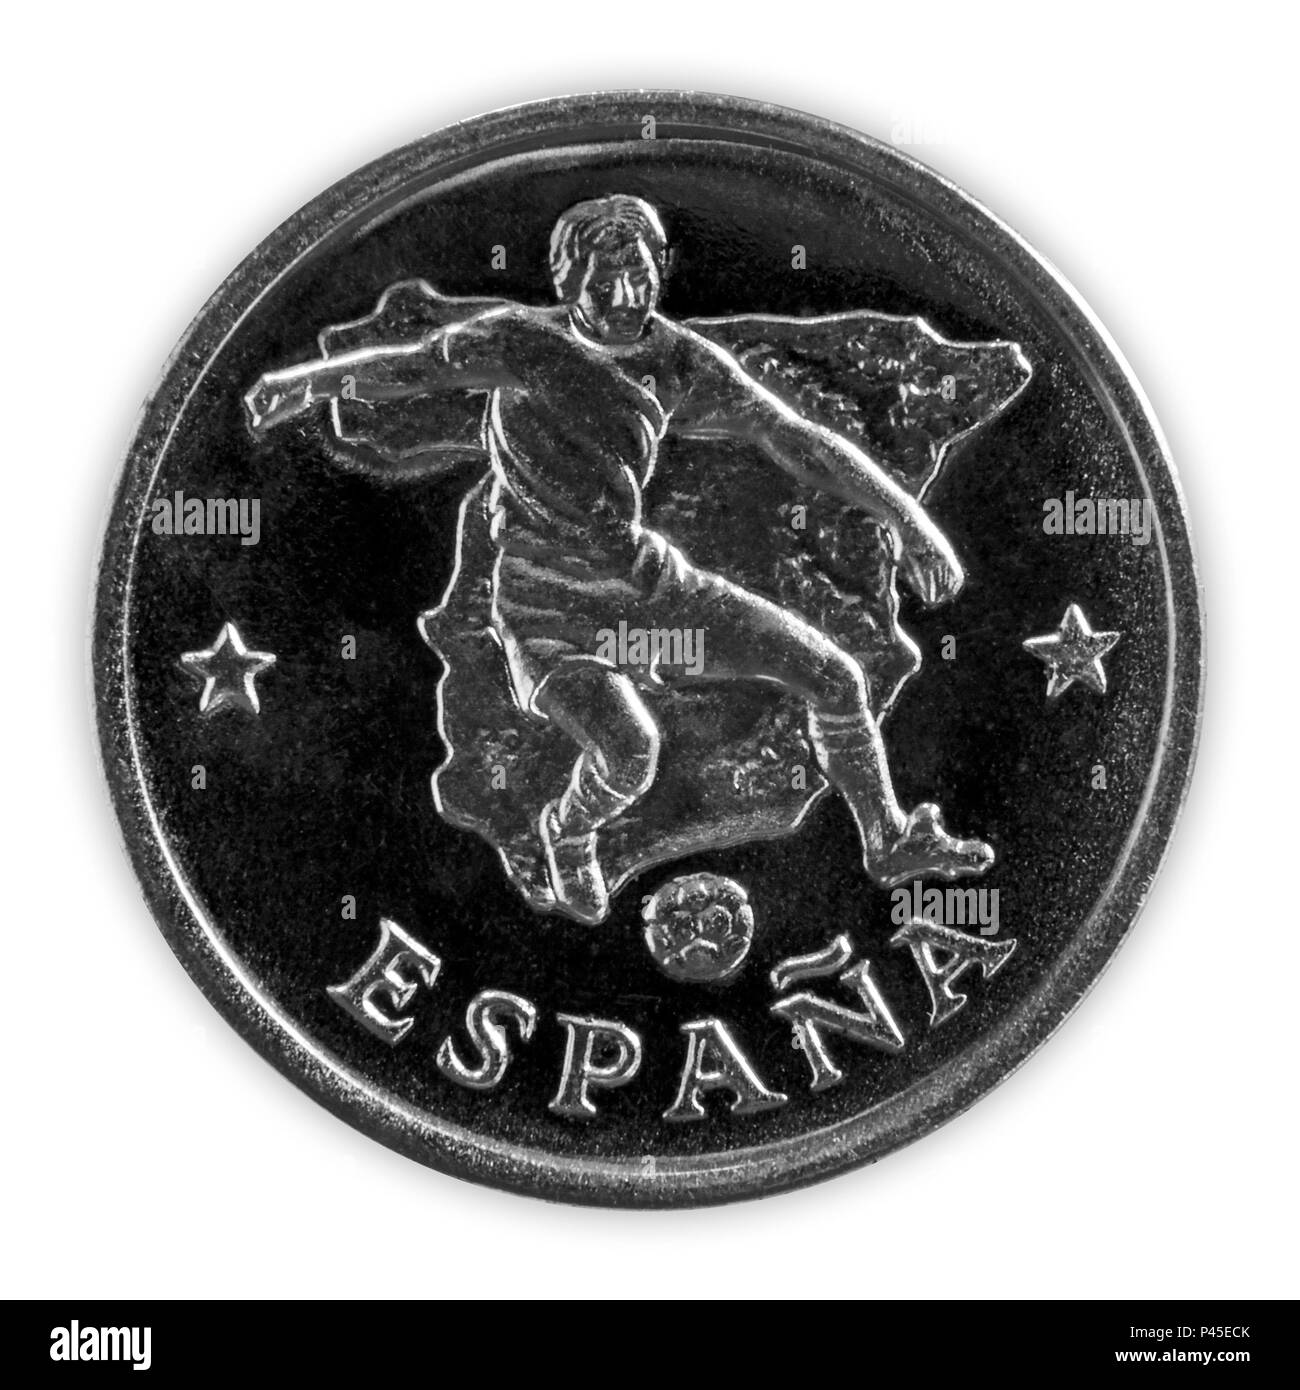 Spagna - Giugno 18, 2018: FIFA World Cup - una moneta commemorativa con un giocatore di football nella squadra spagnola, intitolato Espana, con la mappa della Spagna in ba Foto Stock